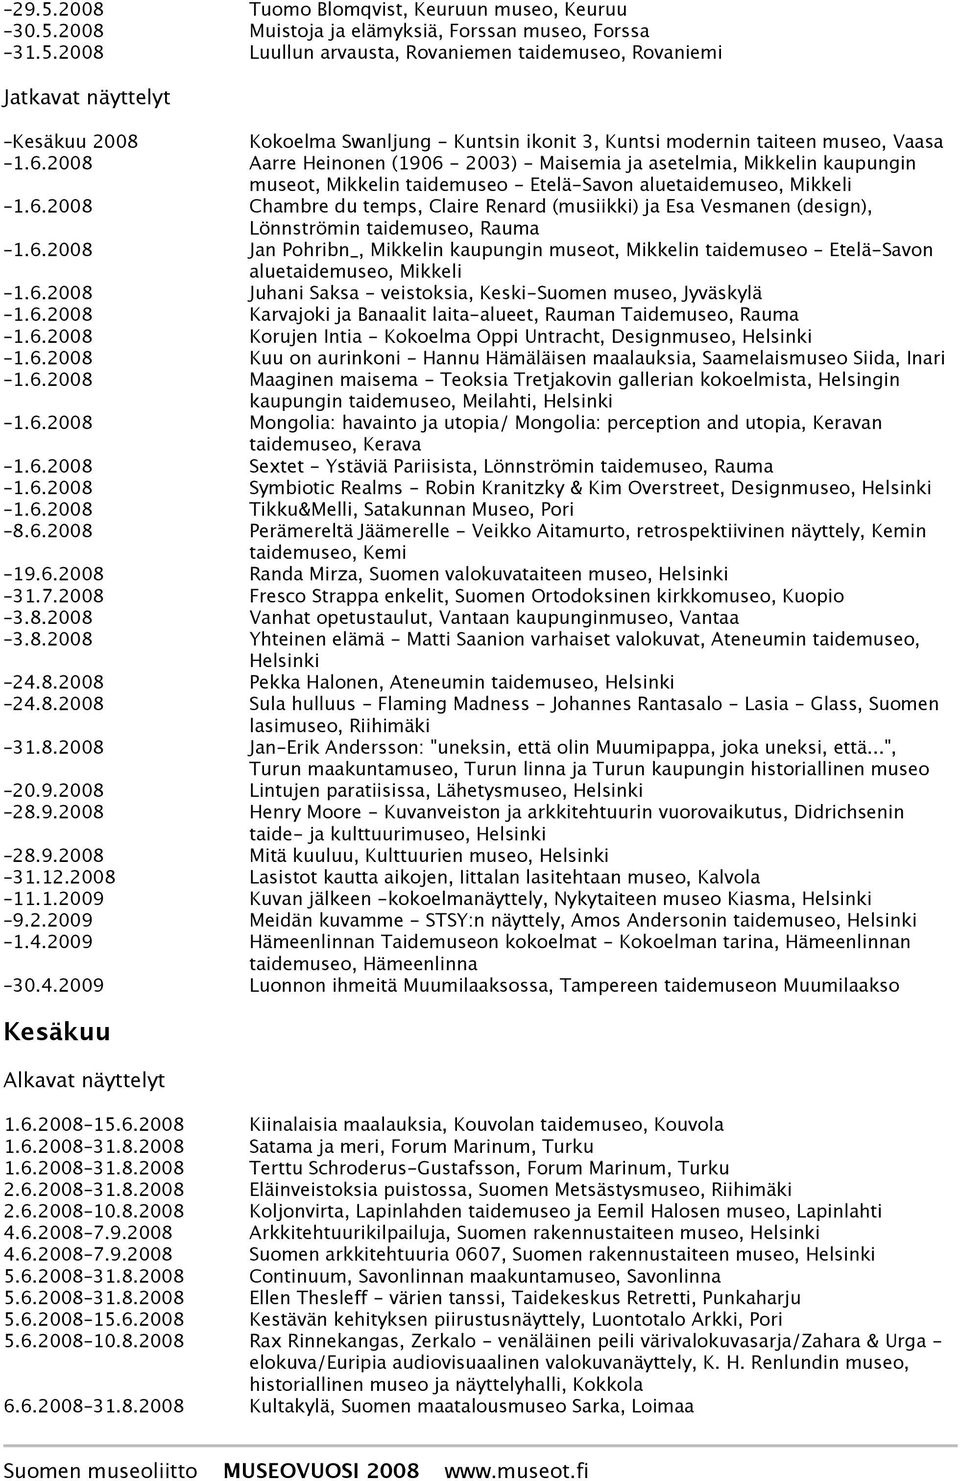 6.2008 Jan Pohribn_, Mikkelin kaupungin museot, Mikkelin taidemuseo - Etelä-Savon aluetaidemuseo, Mikkeli 1.6.2008 Juhani Saksa - veistoksia, Keski-Suomen museo, Jyväskylä 1.6.2008 Karvajoki ja Banaalit laita-alueet, Rauman Taidemuseo, Rauma 1.